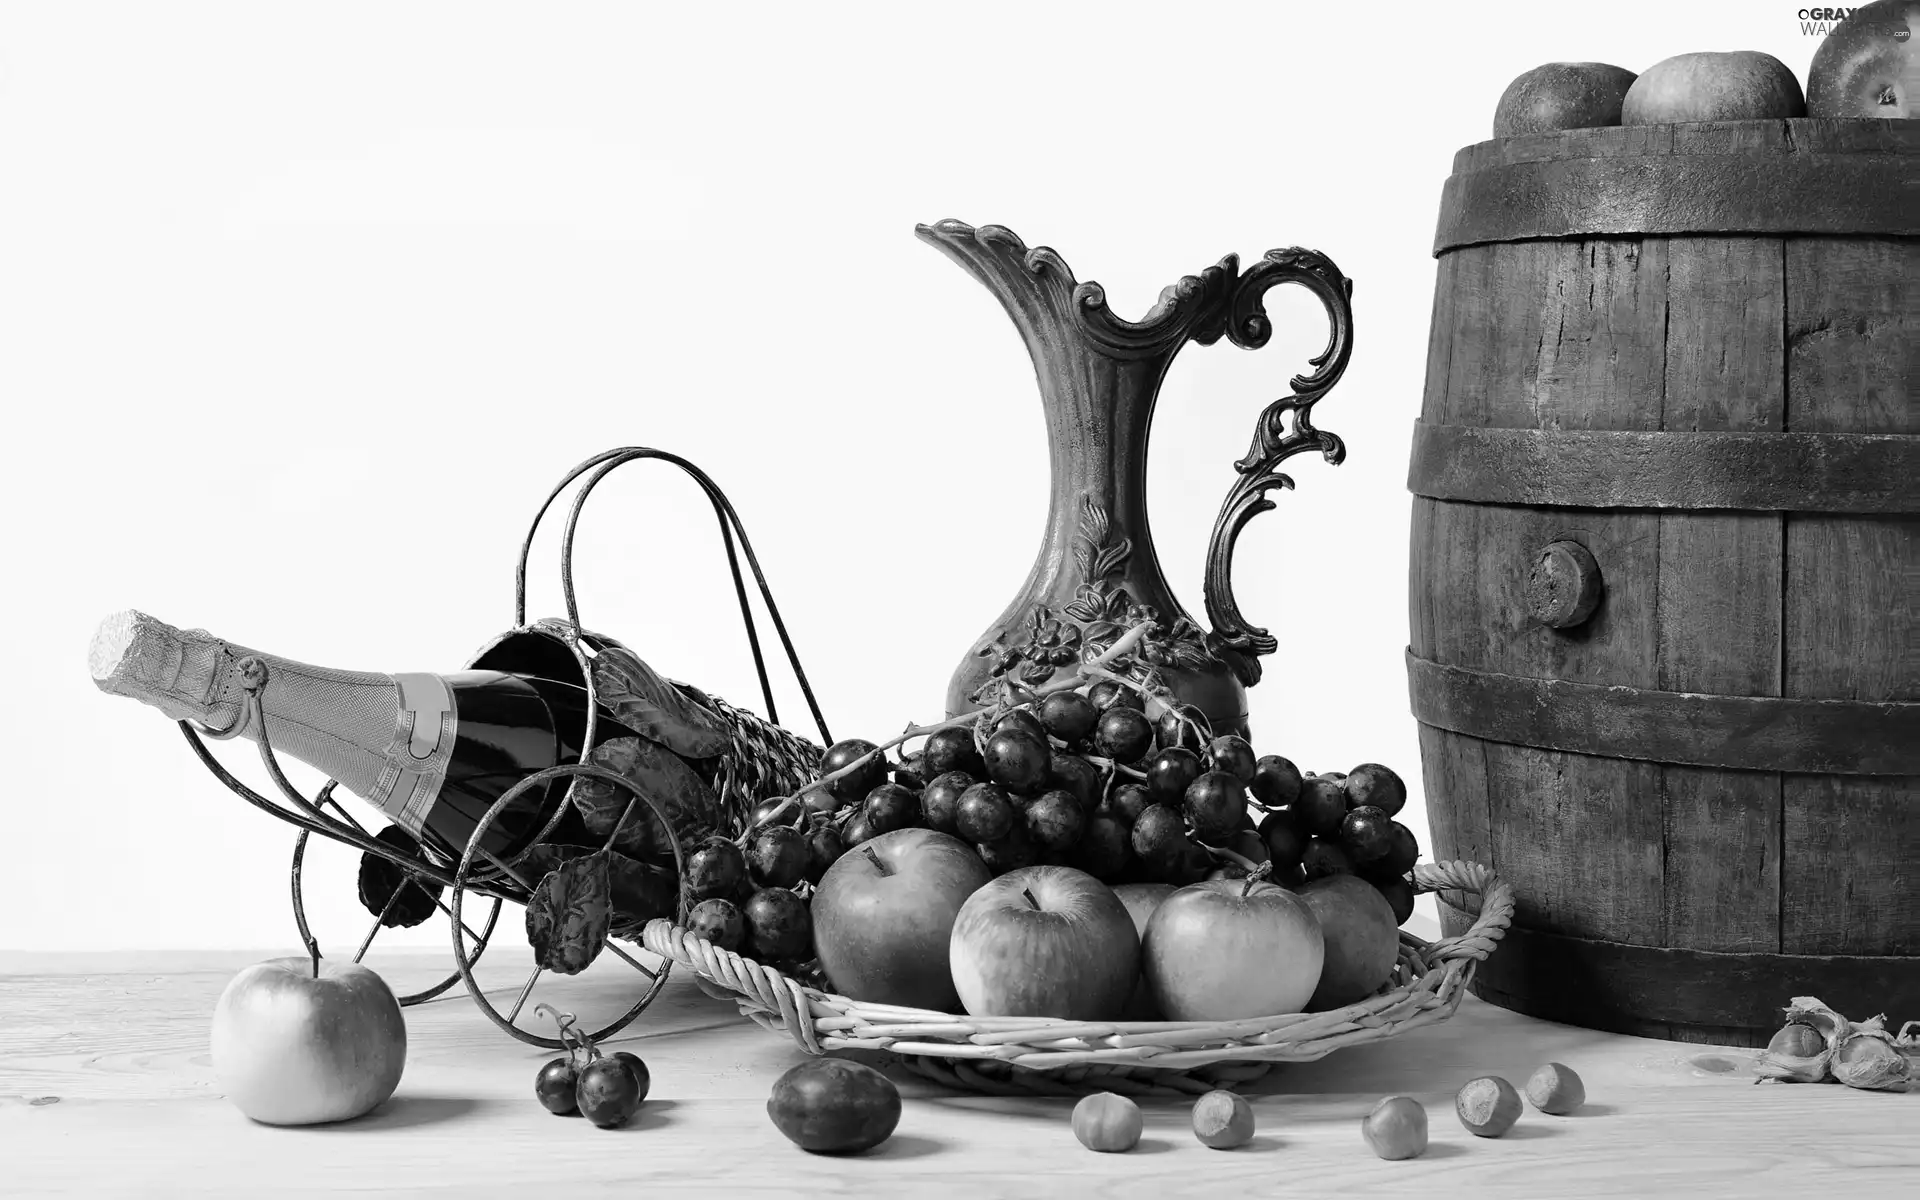 Grapes, apples, Bottle, Wines, barrel